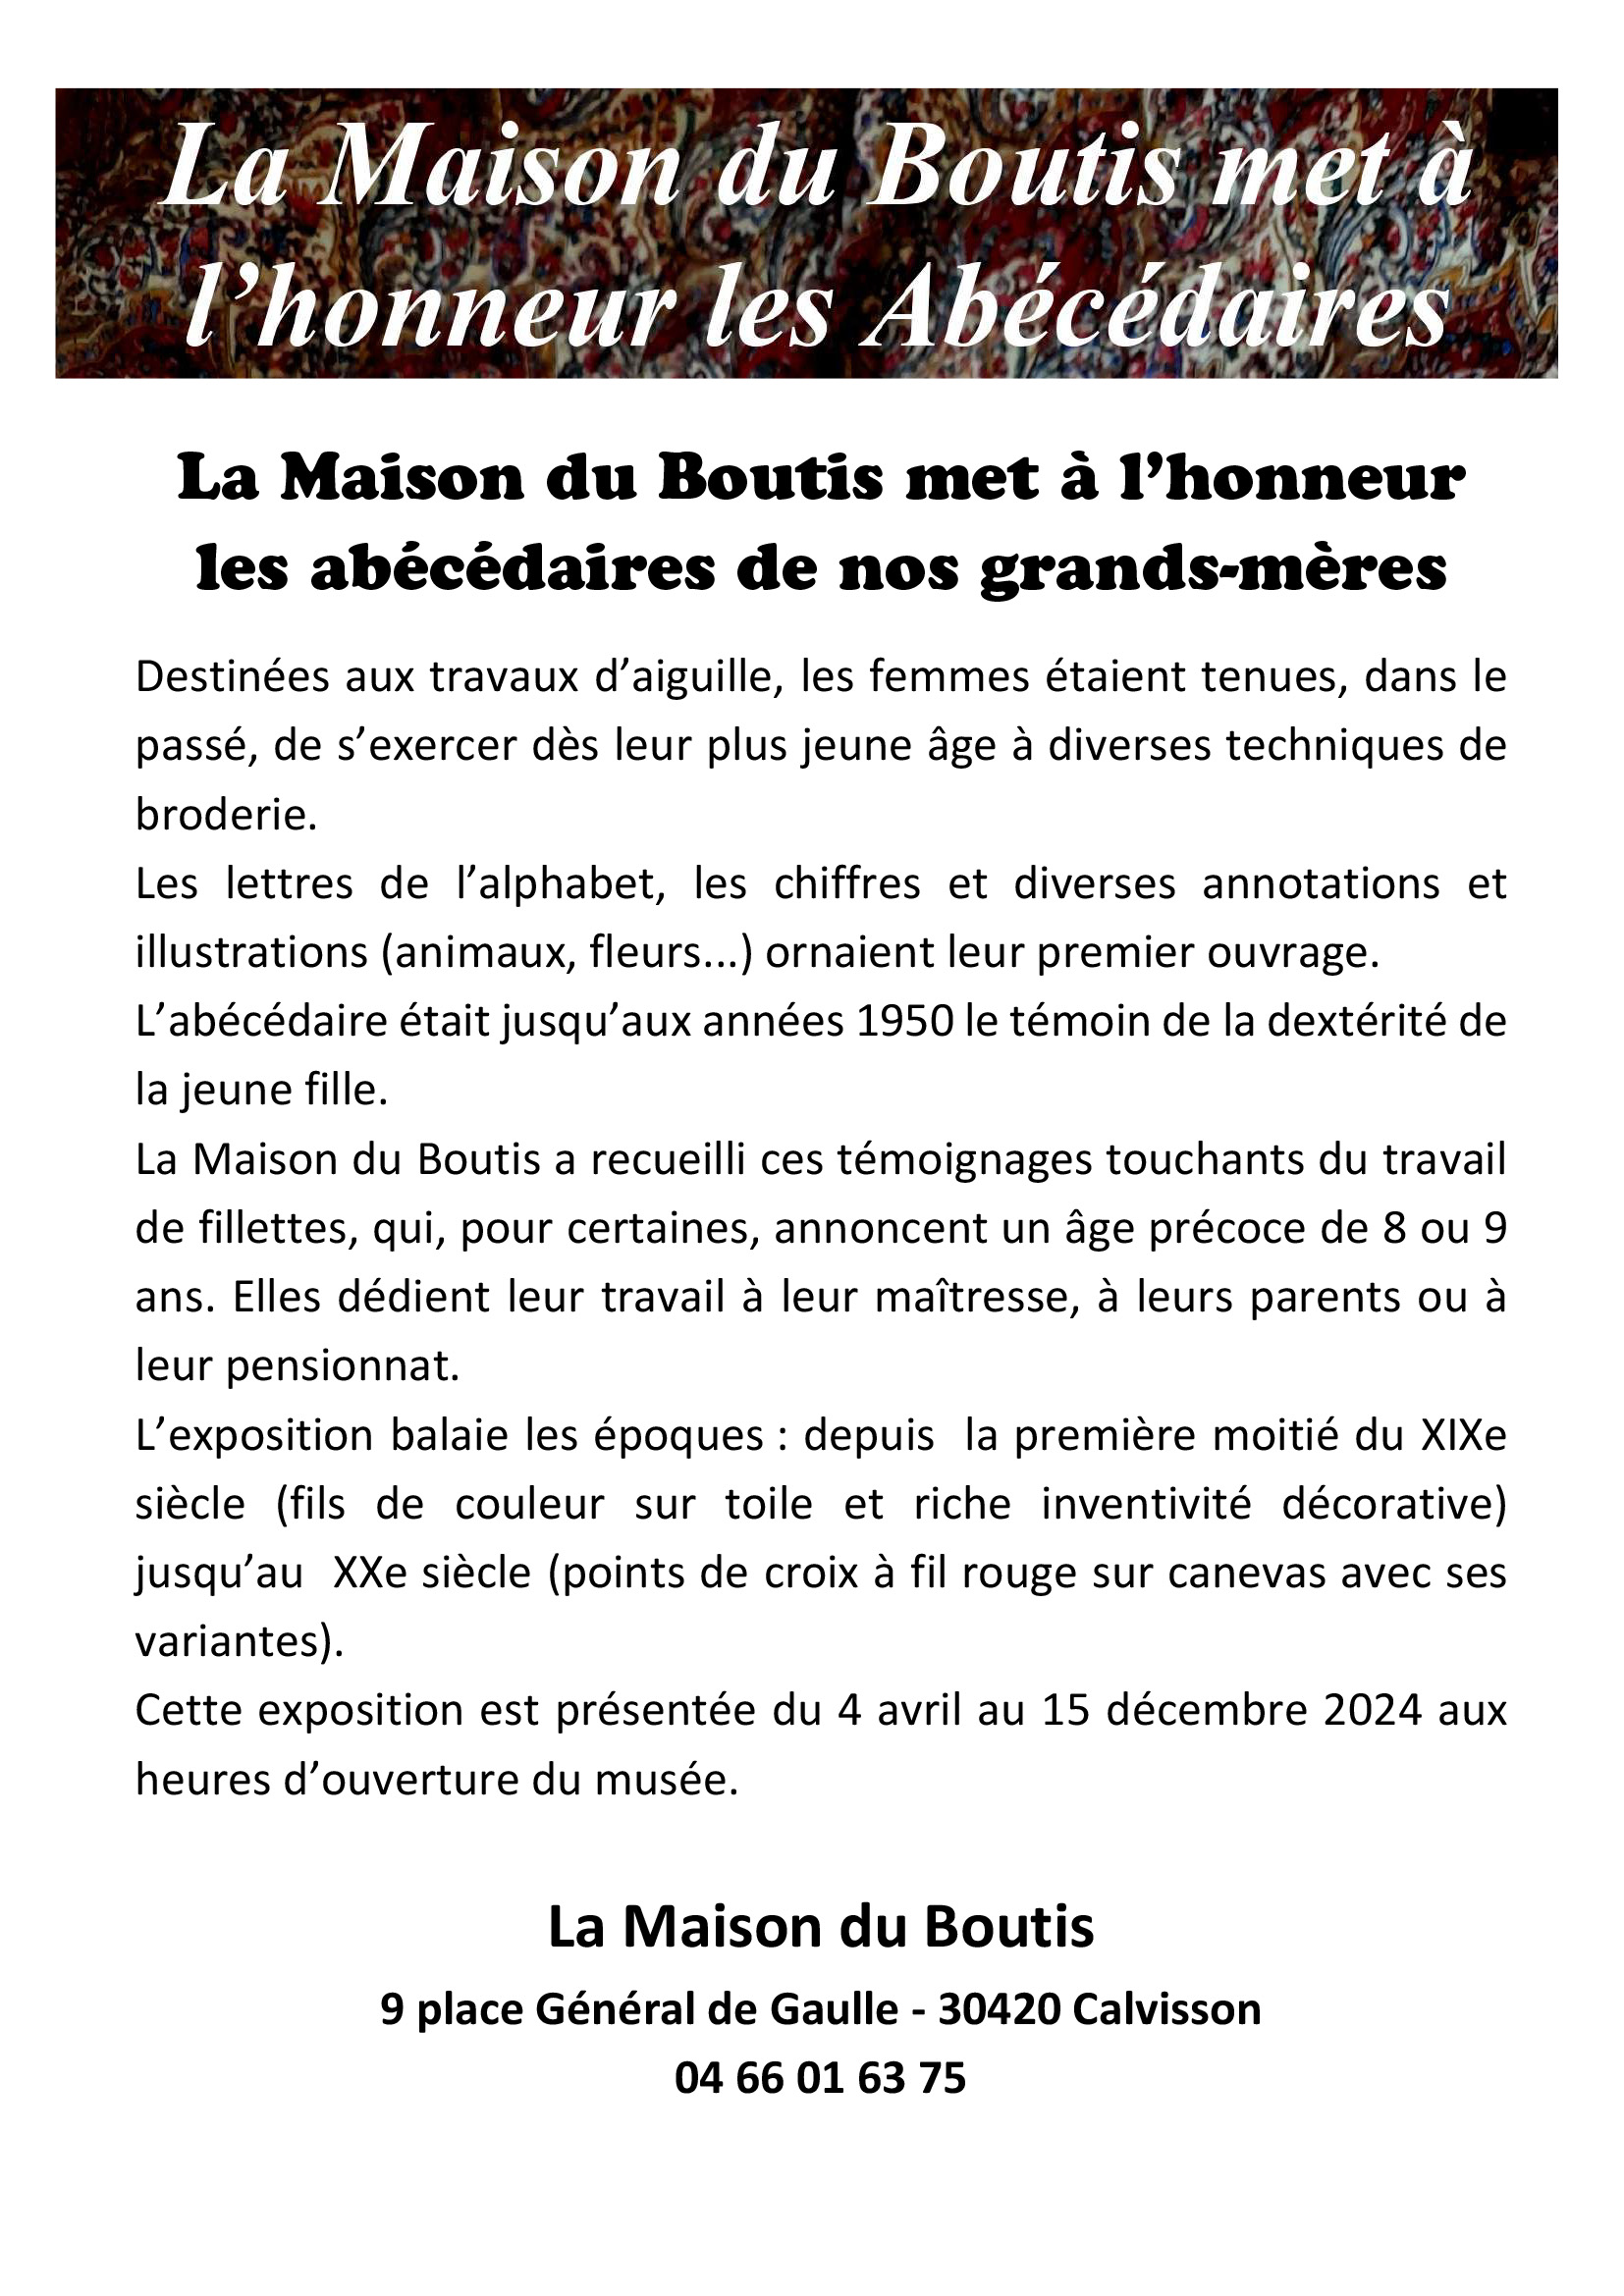 LA MAISON DU BOUTIS PRESENTATION